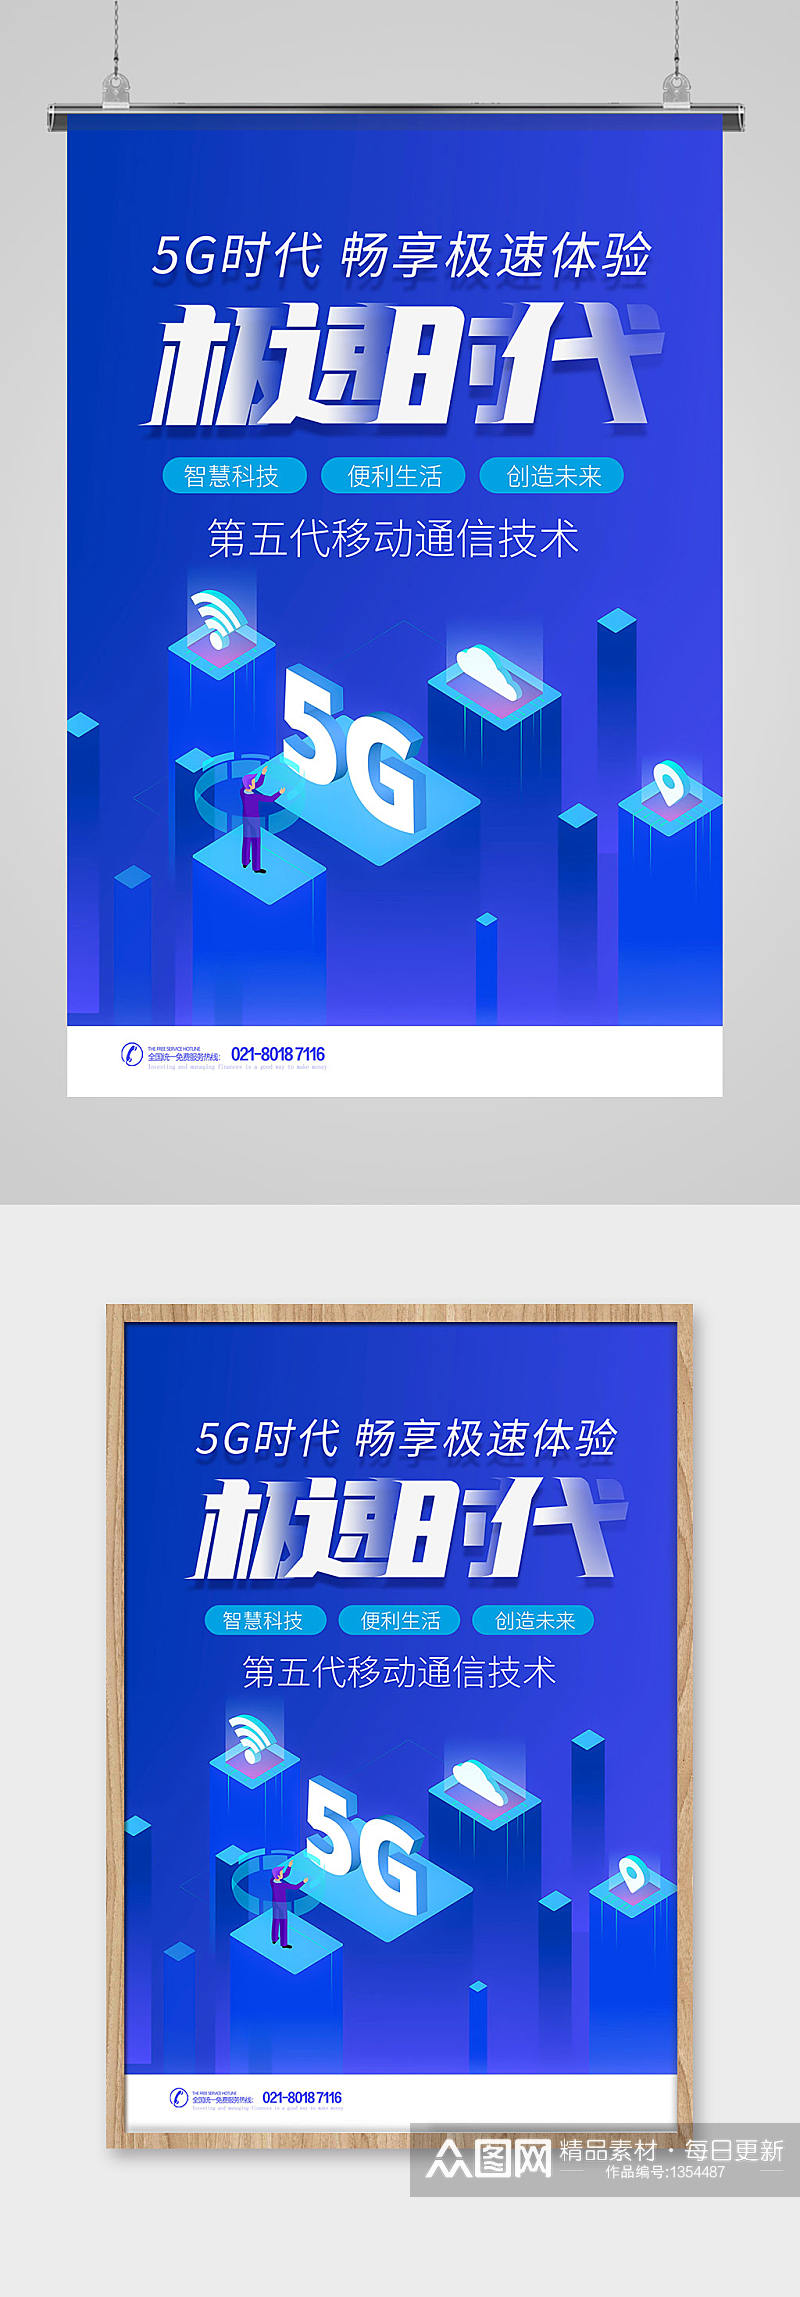 蓝色畅想5G新时代科技海报设计素材